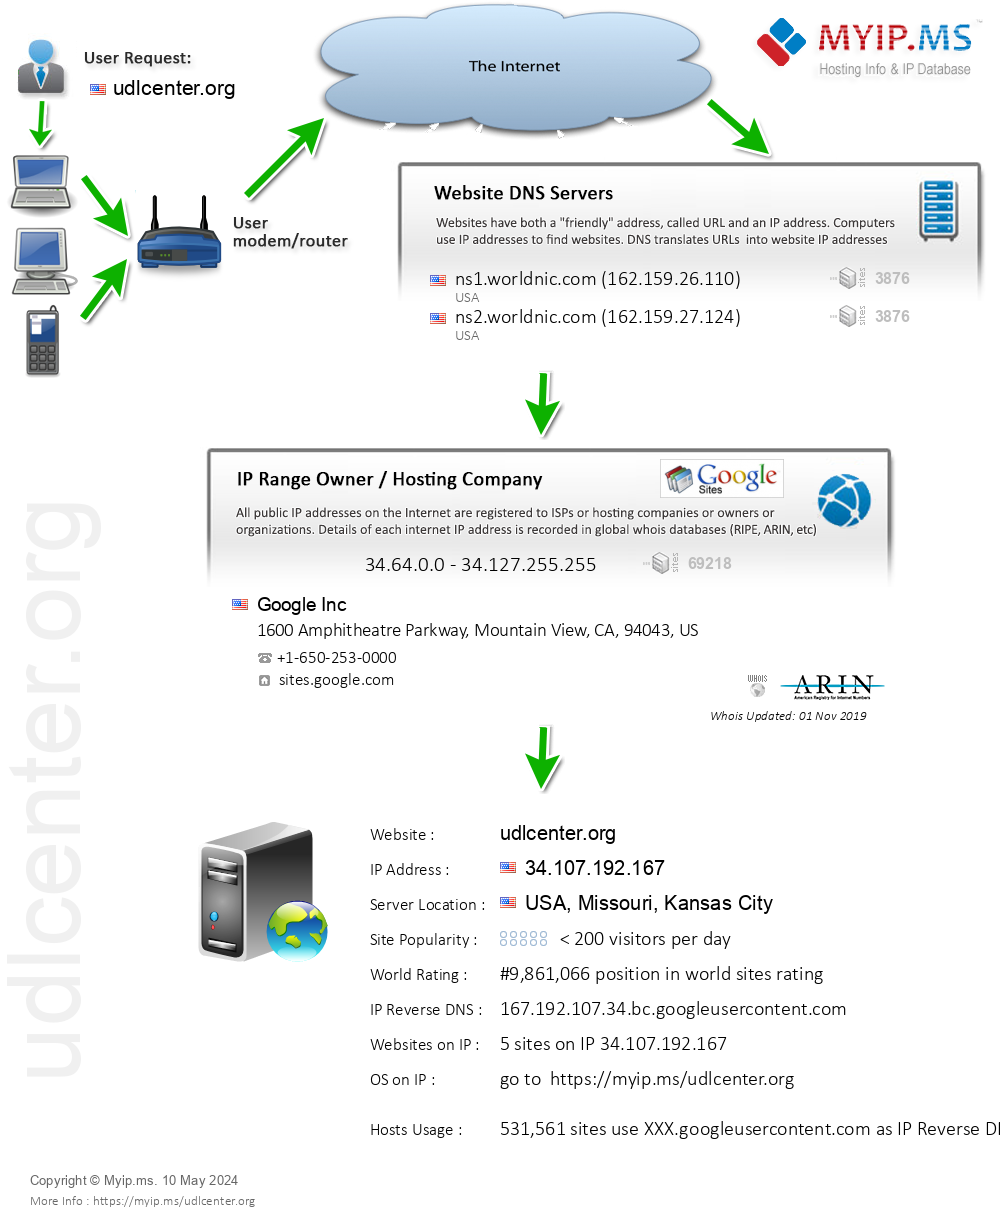 Udlcenter.org - Website Hosting Visual IP Diagram